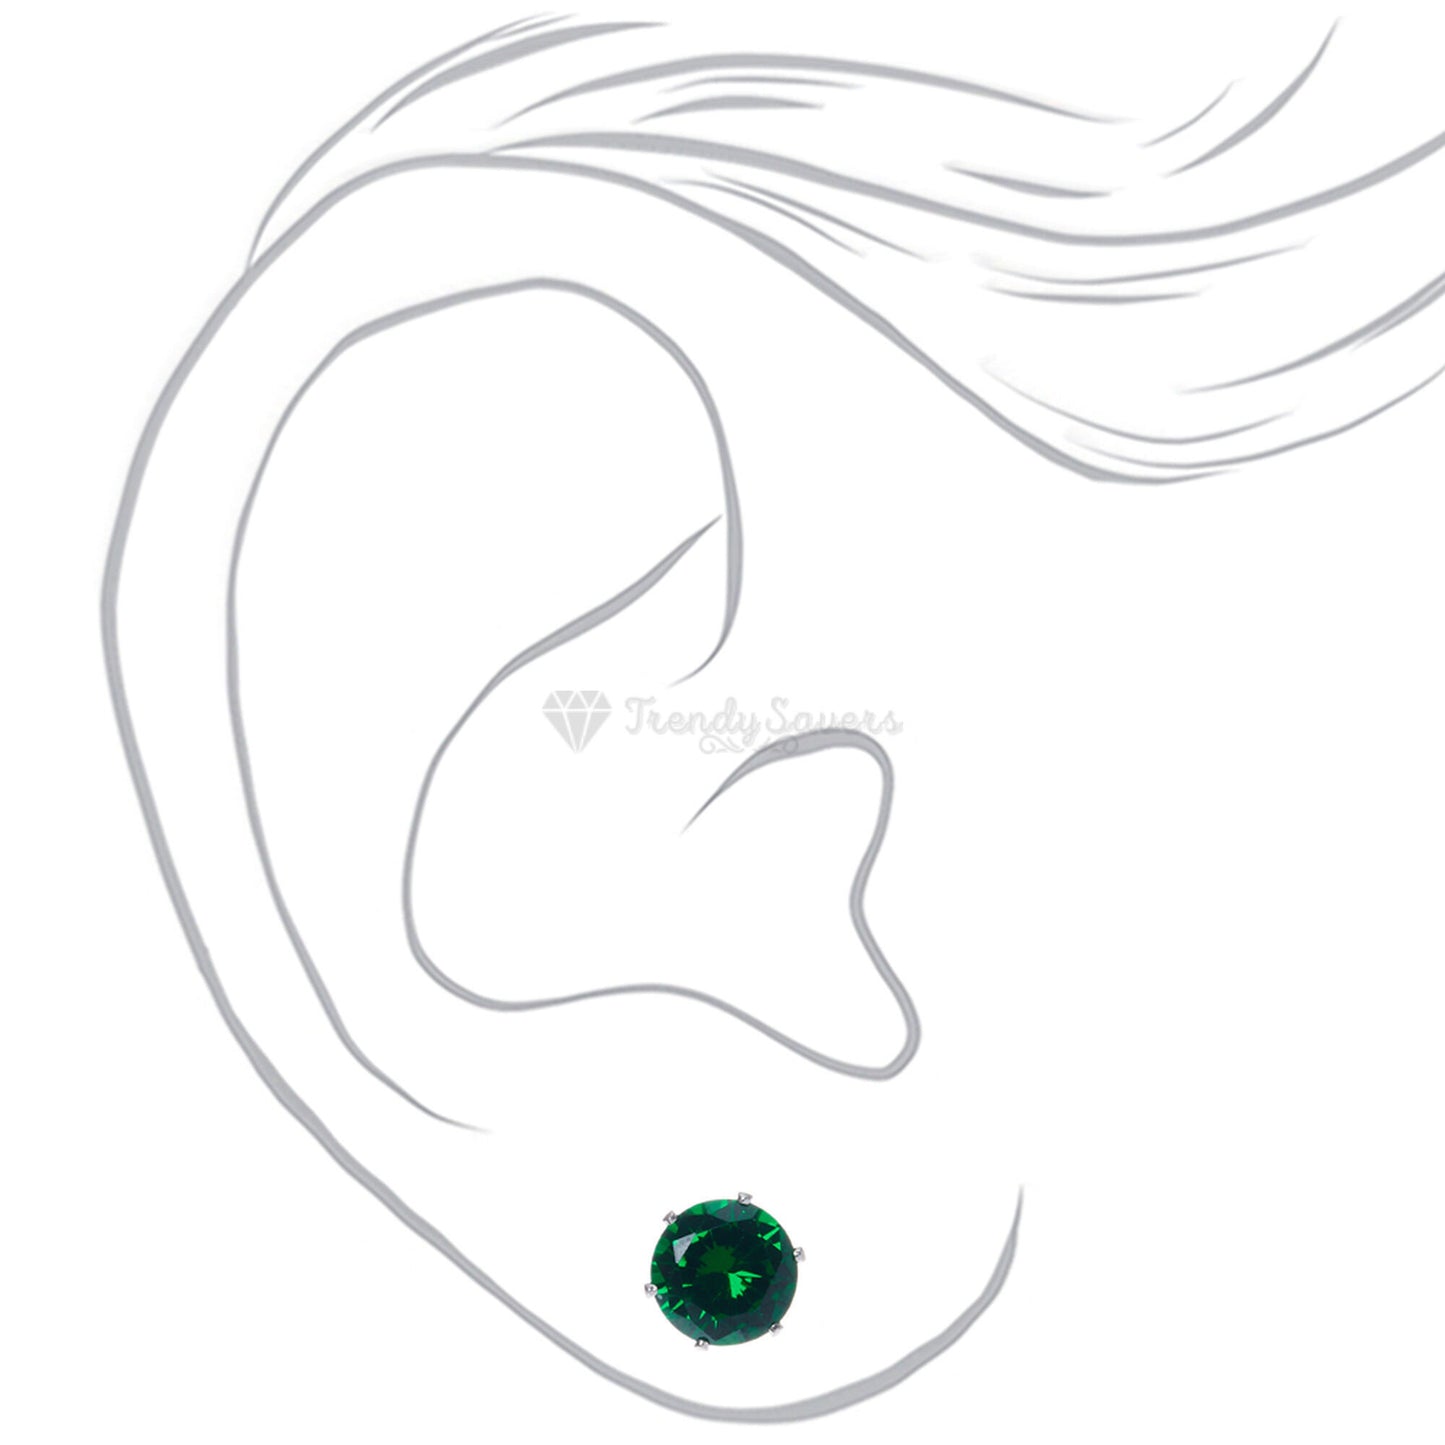 6MM Wide Round Cut Green Cubic Zirconia Ear Stud Earrings Surgical Steel Jewelry